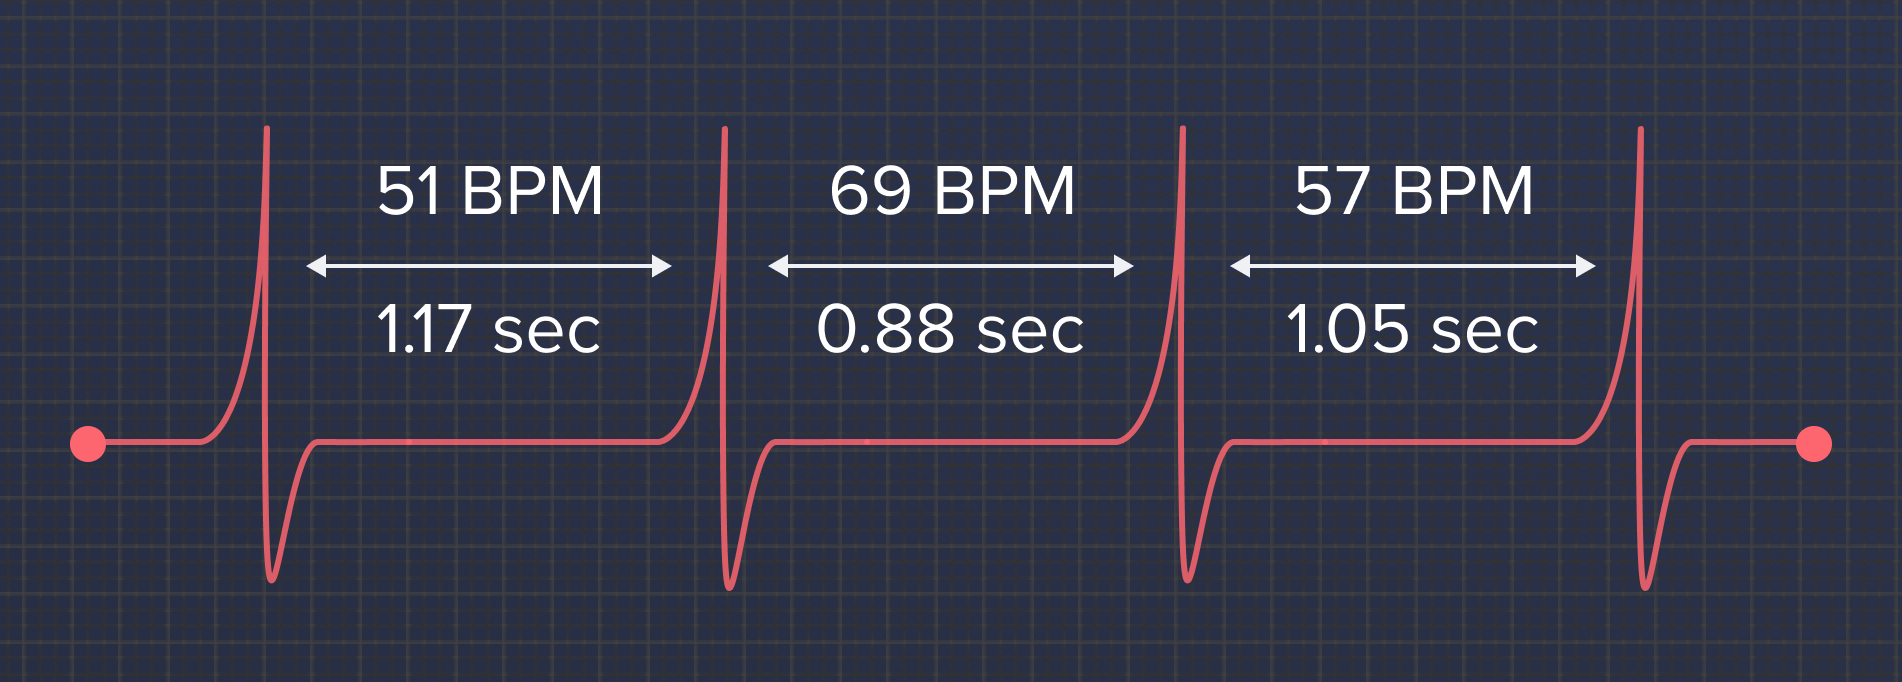 Вариабельность сердечного ритма. Вариабельности сердечного ритма (HRV). Вариабельность сердечного ритма картинки. Вариабельность сердечного ритма (HRV) рисунок. ВРМ измерении пульса что значит.